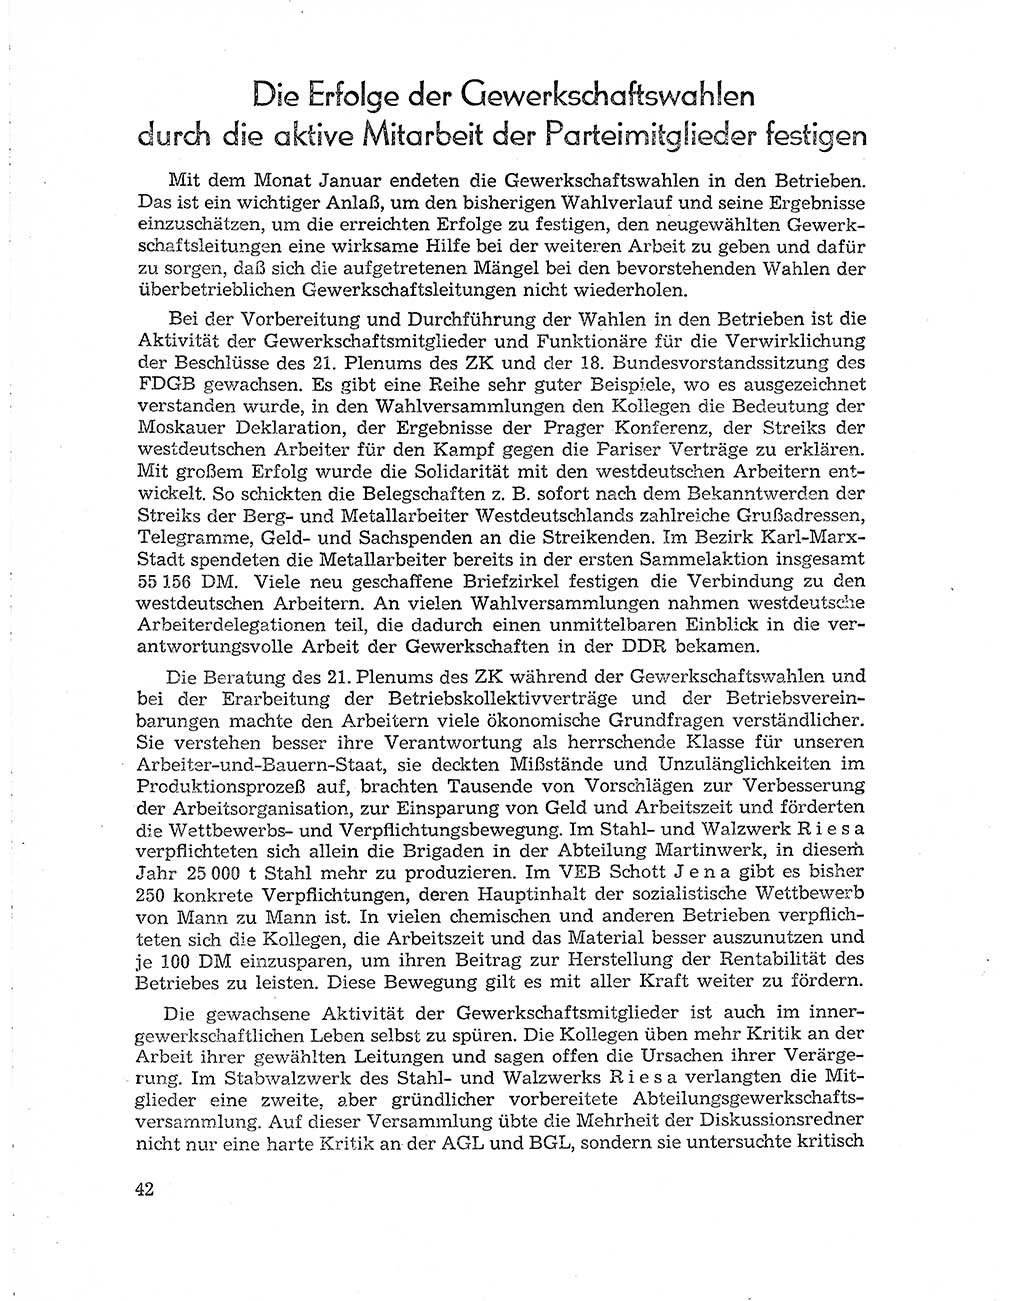 Neuer Weg (NW), Organ des Zentralkomitees (ZK) der SED (Sozialistische Einheitspartei Deutschlands) für Fragen des Parteiaufbaus und des Parteilebens, 10. Jahrgang [Deutsche Demokratische Republik (DDR)] 1955, Seite 42 (NW ZK SED DDR 1955, S. 42)